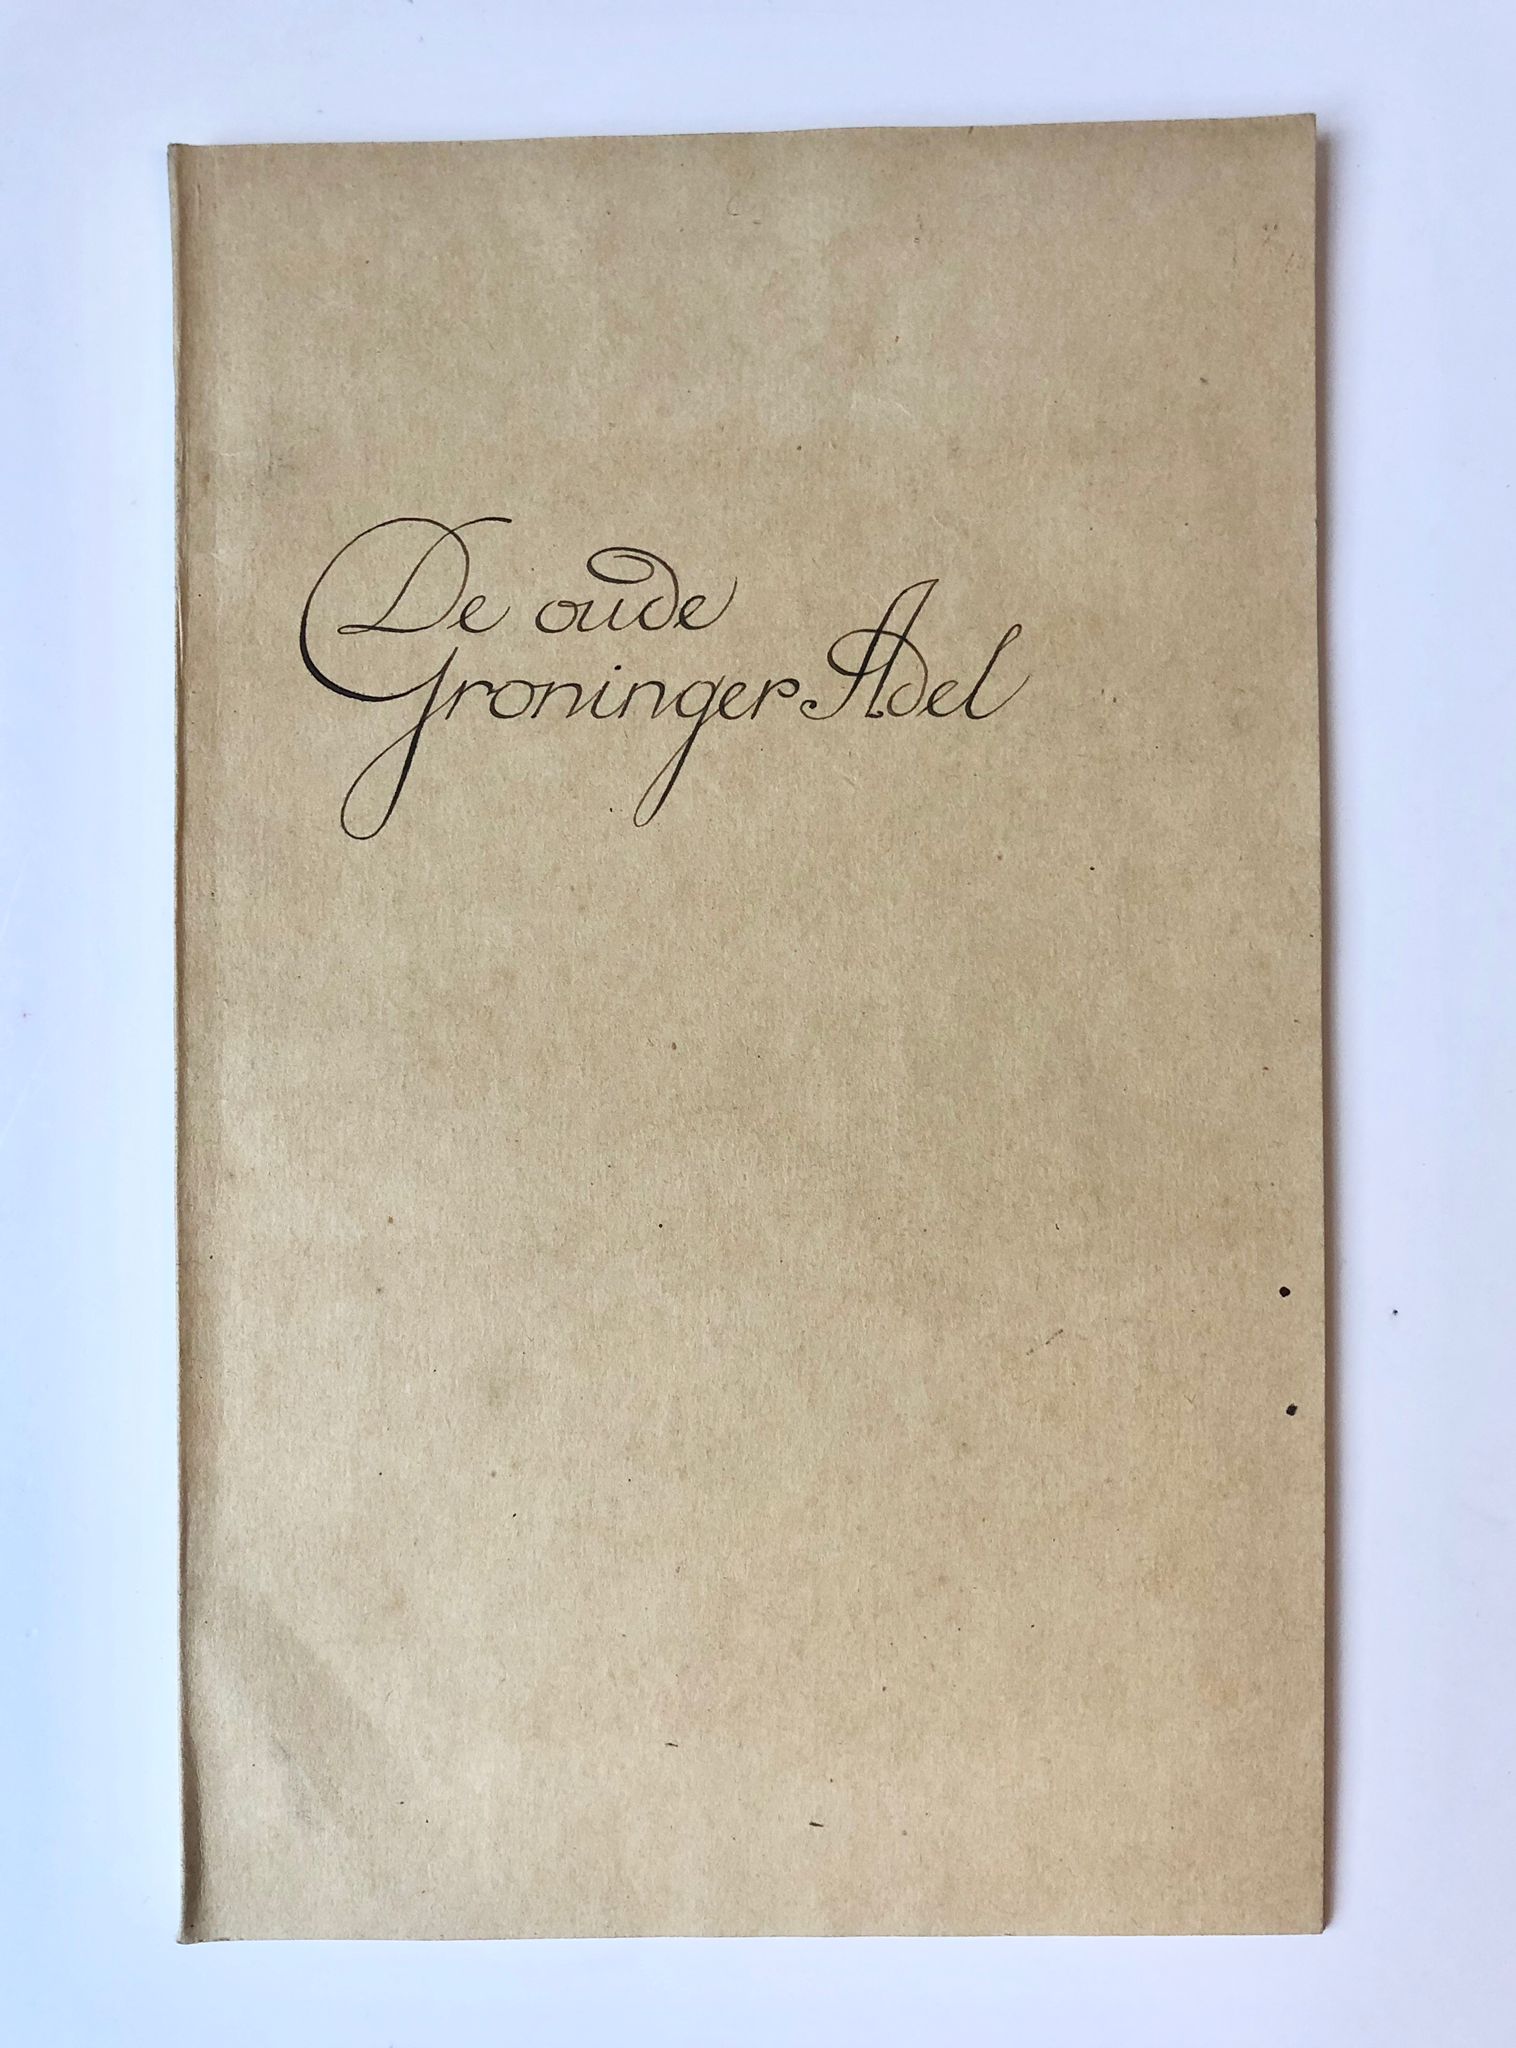 [Groningen] De oude Groninger Adel, 46 pp. Uit: Bijdragen tot de geschiedenis en oudheidkunde inzonderheid van de Provincie Groningen 1864-1873, Deel VII.